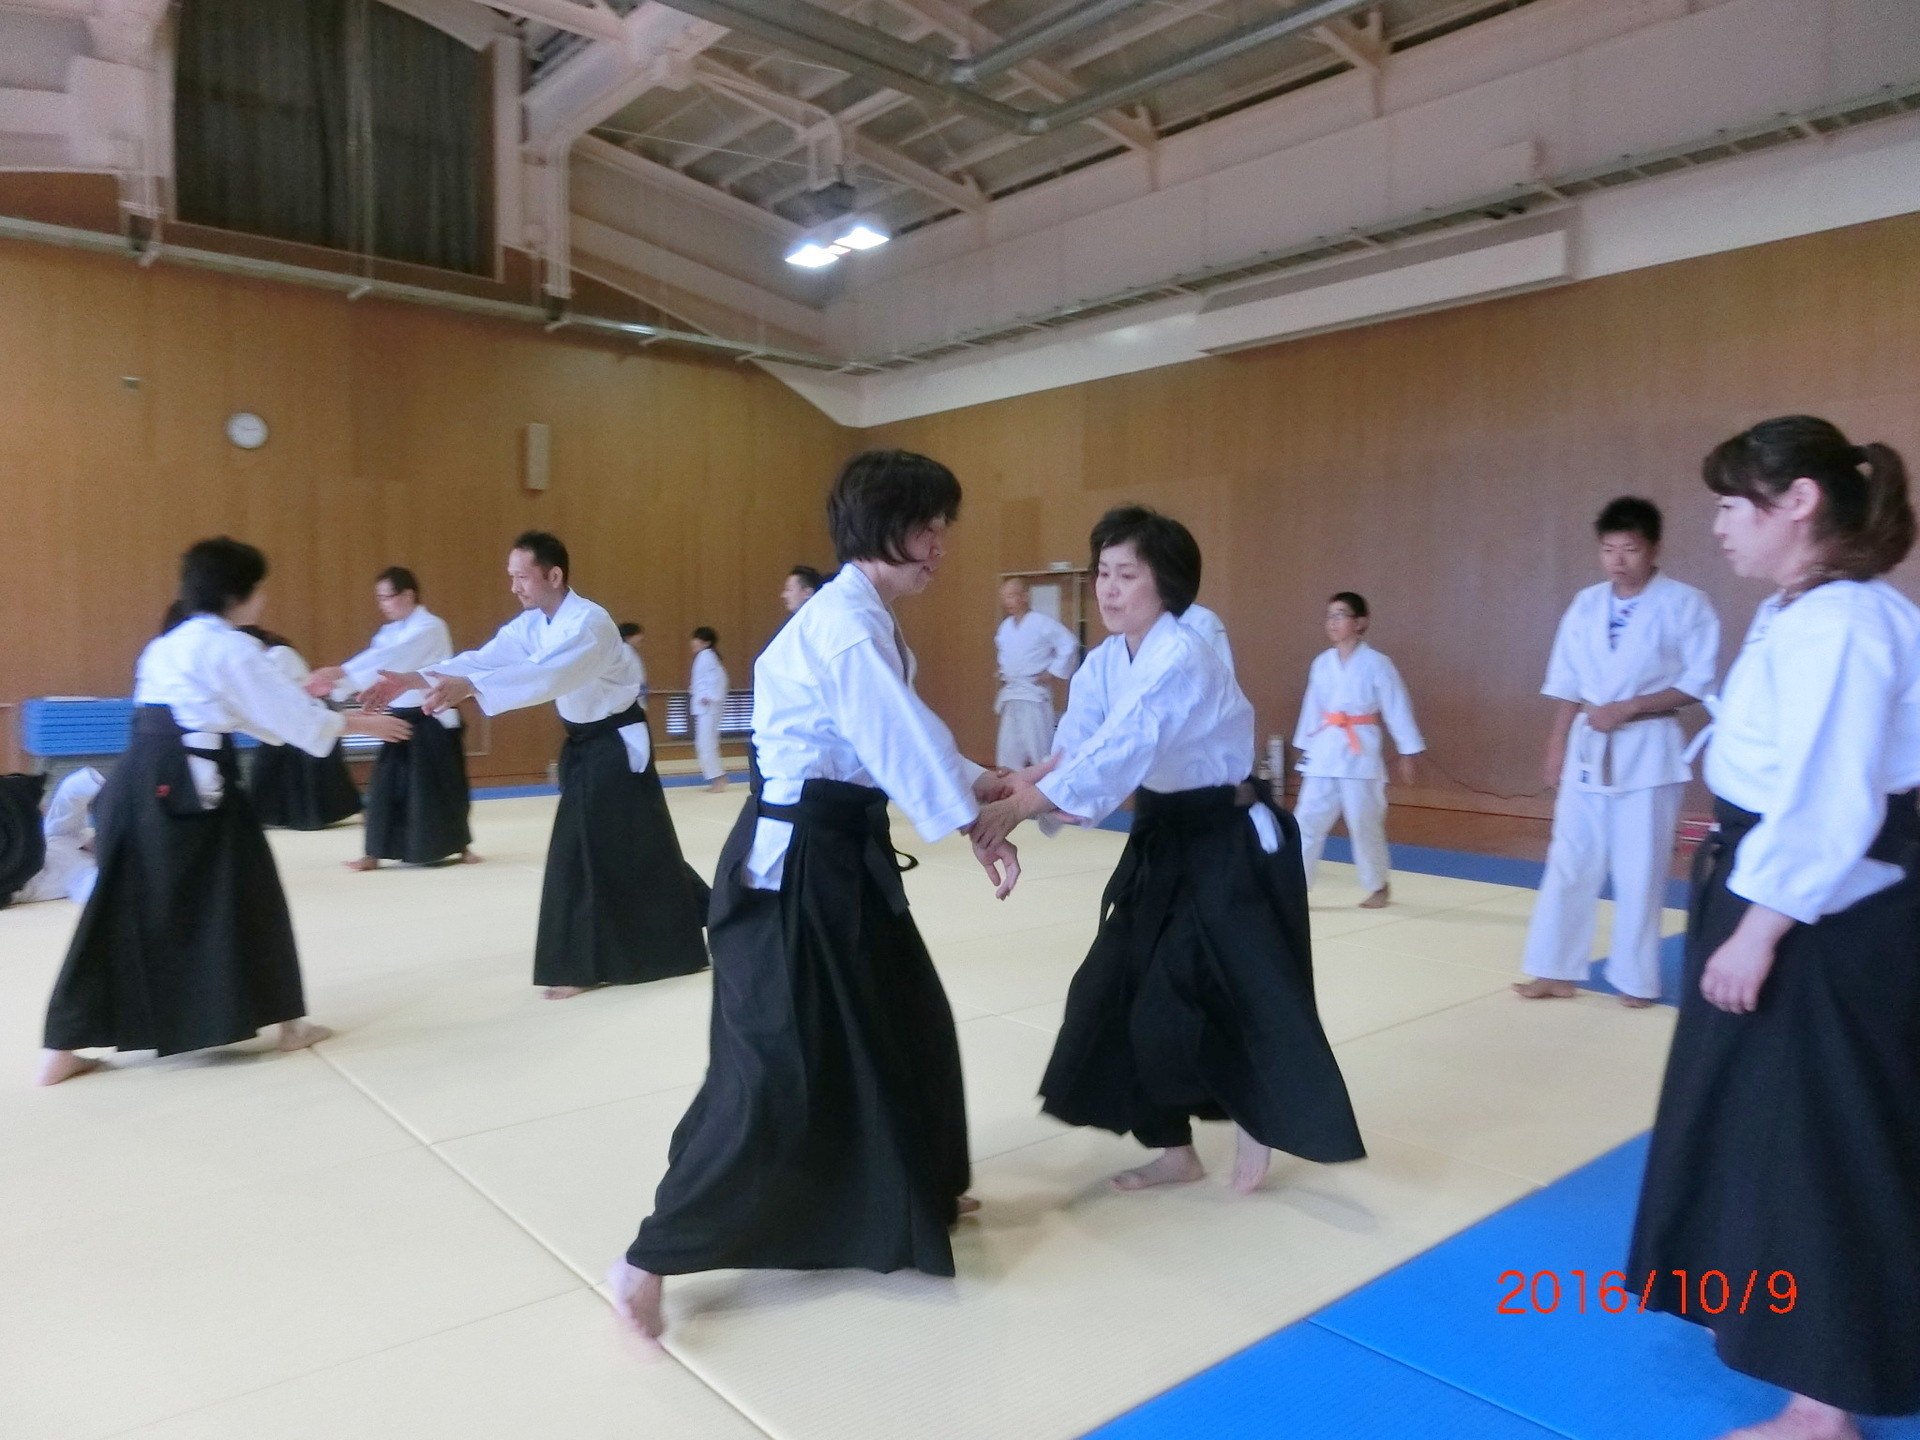 代 40代の女性の運動不足と大阪 春風会合気道 大阪 春風会合気道aikidoは大阪市住吉区の三稜中学挌技室で稽古しています